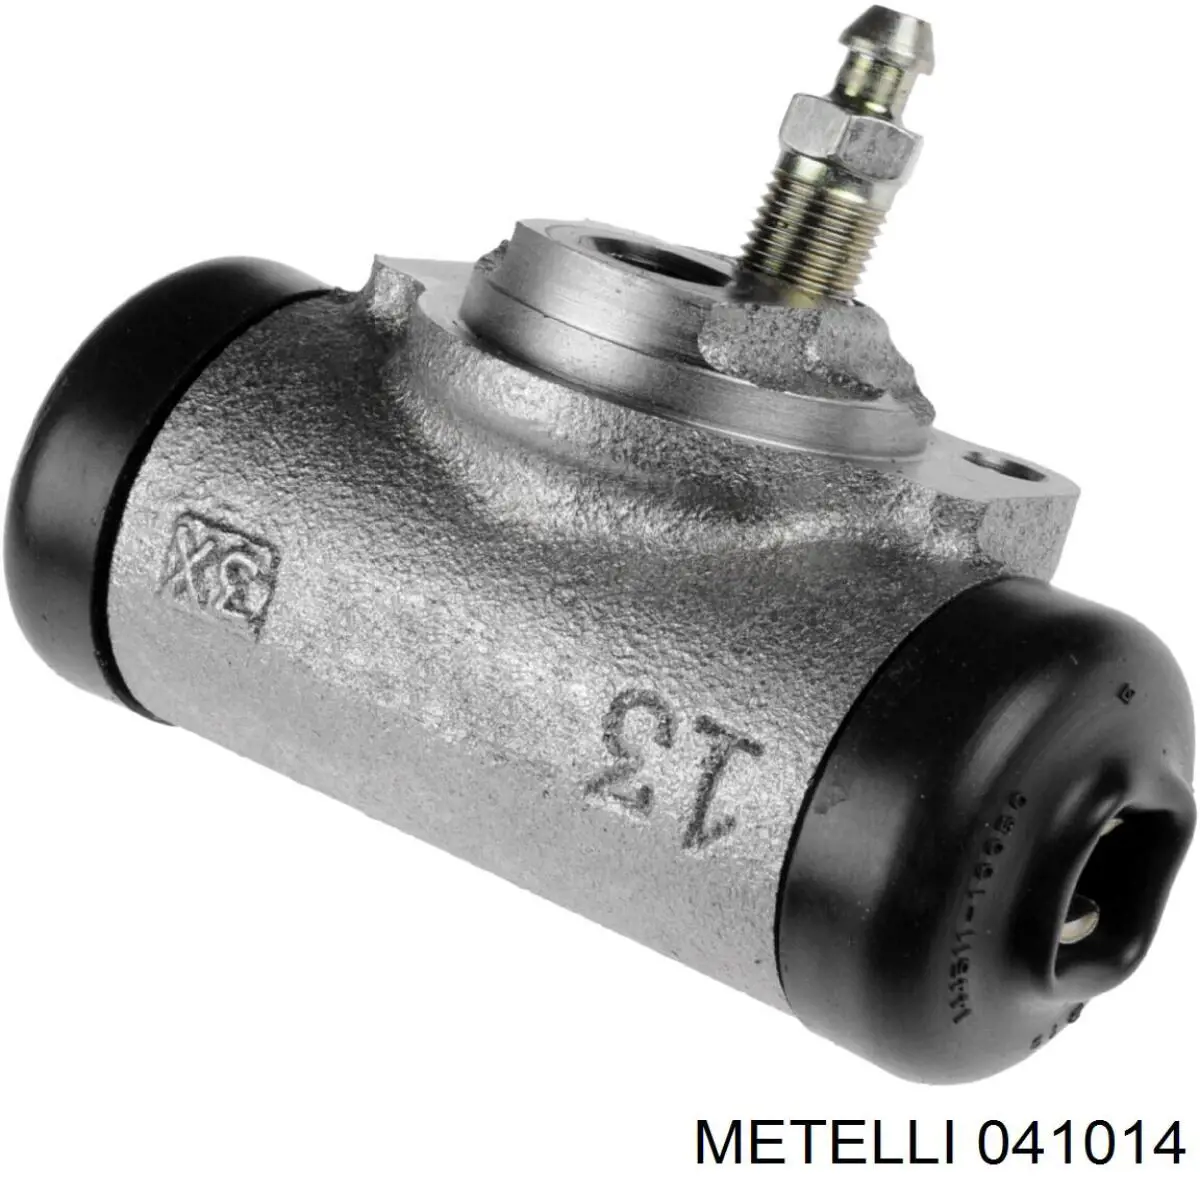 04-1014 Metelli цилиндр тормозной колесный рабочий задний